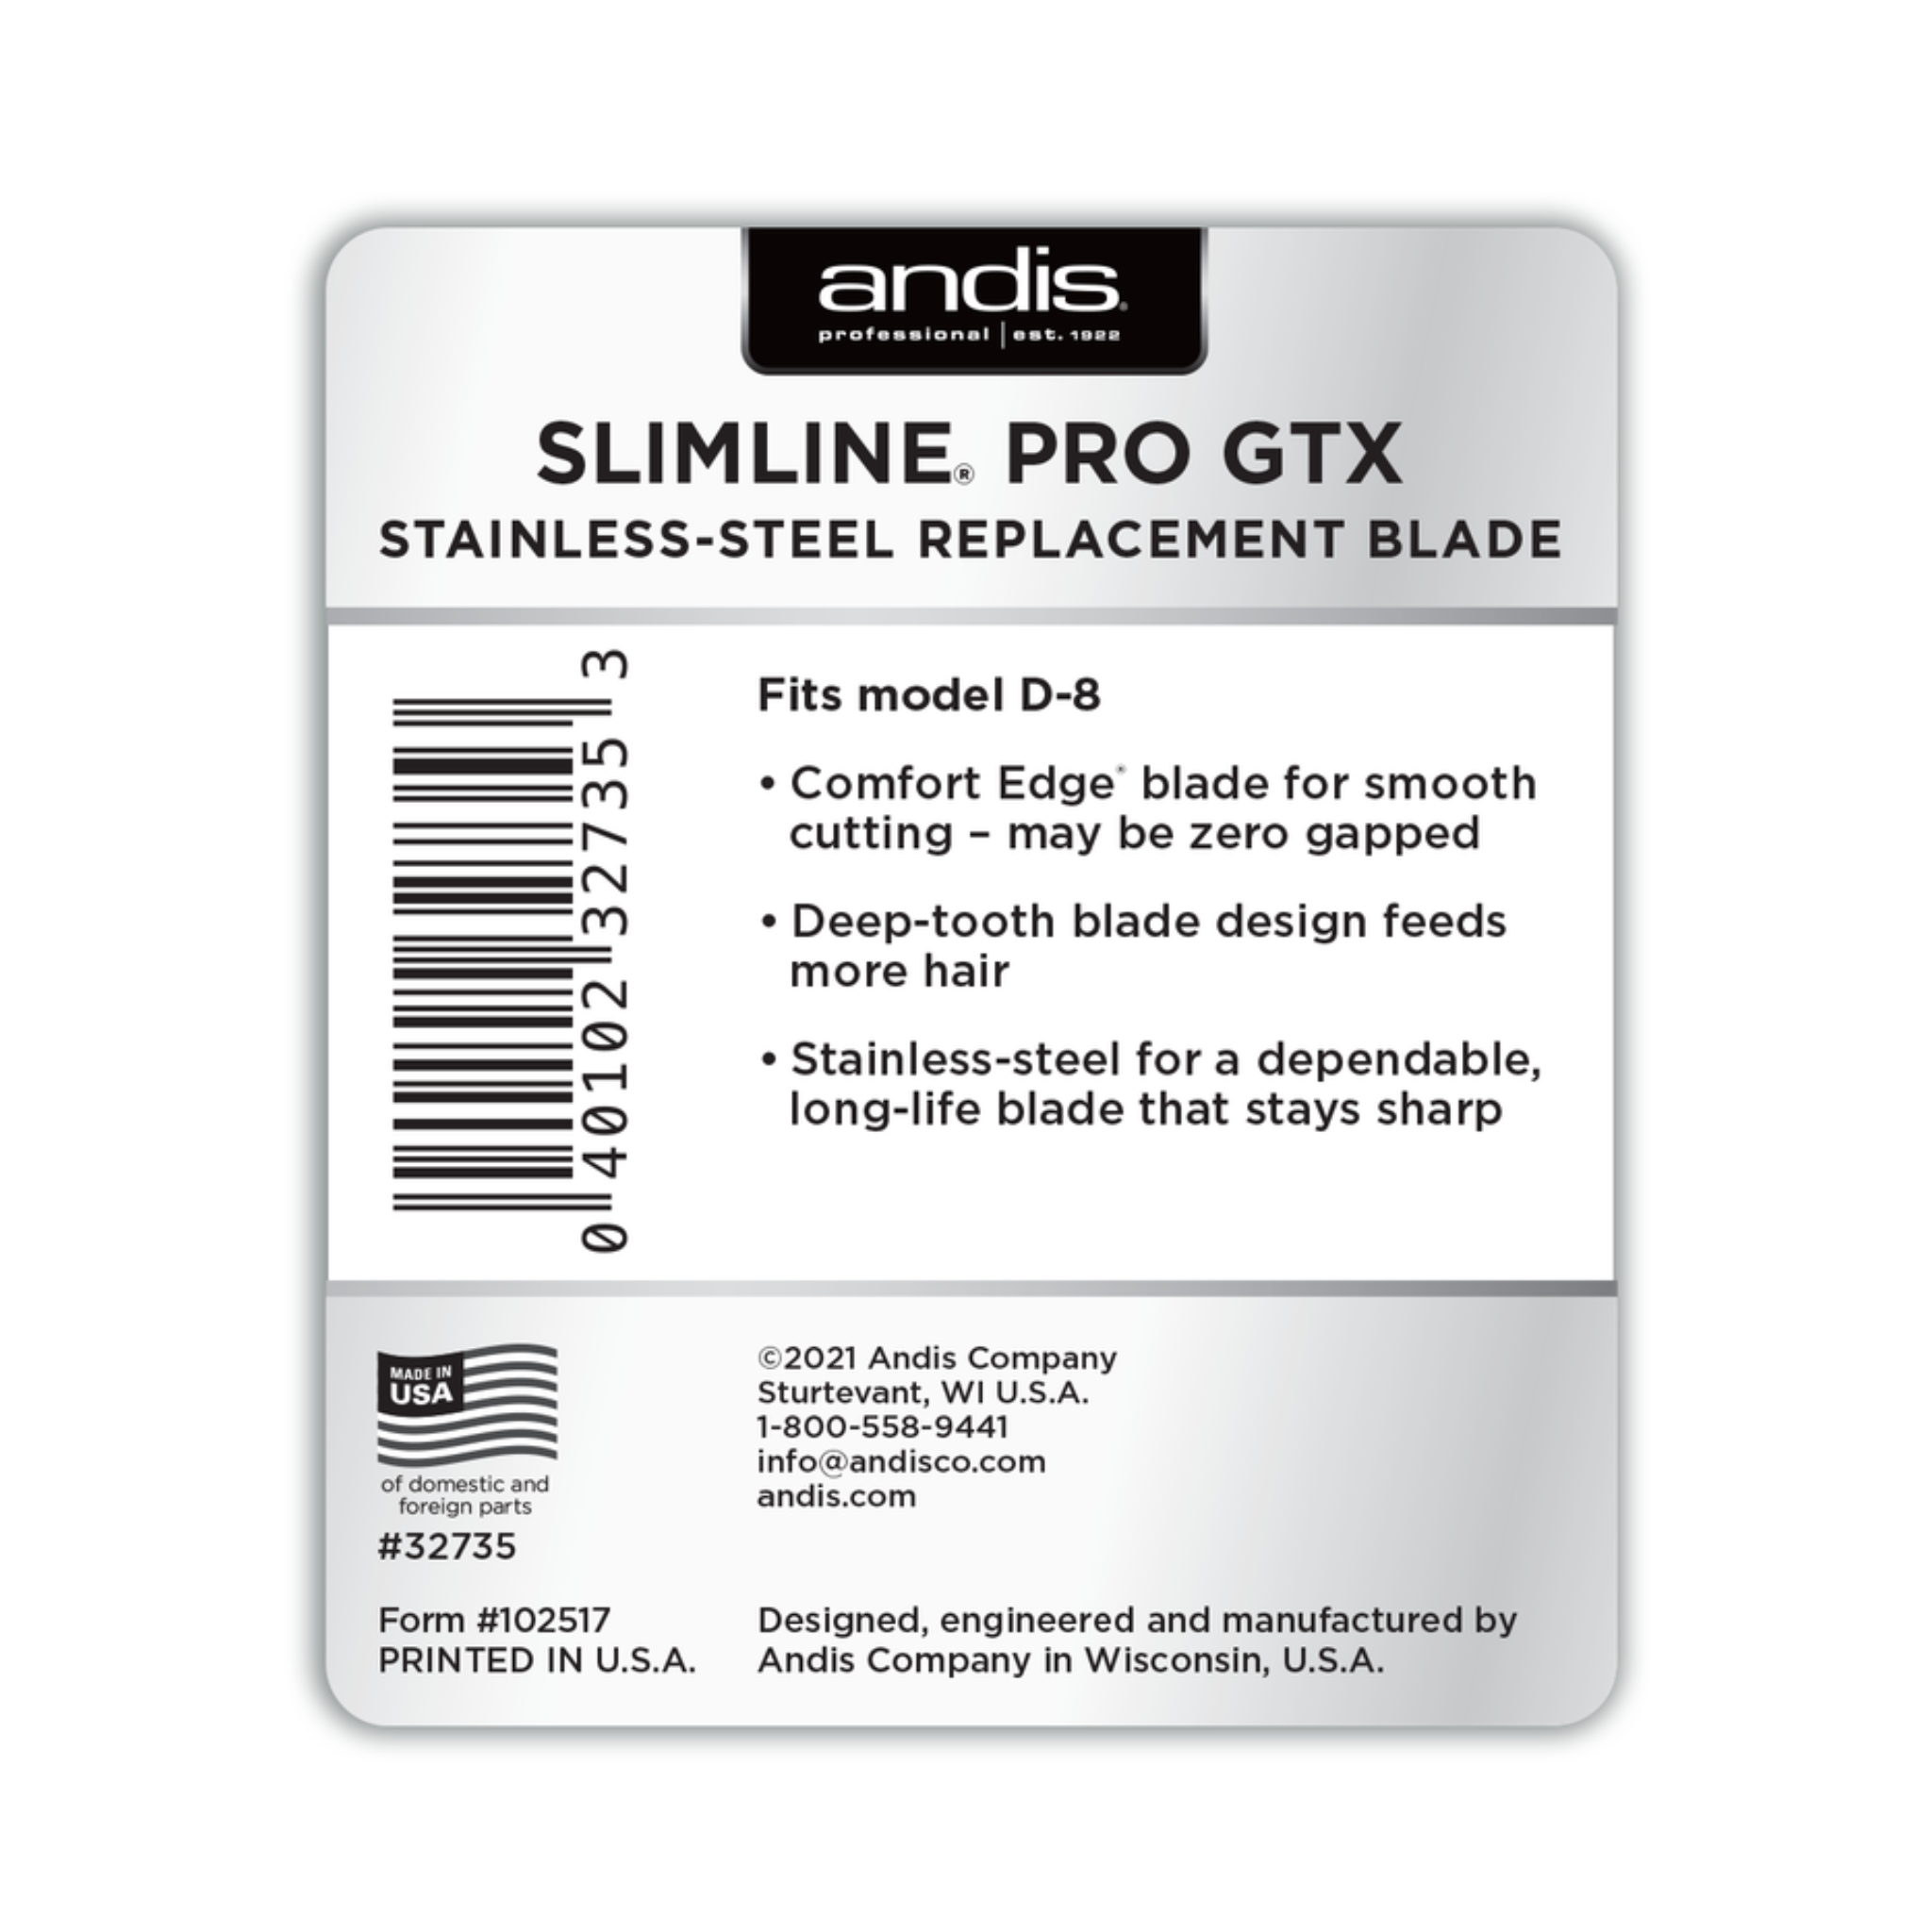 Slimline Pro GTX - Replacement Blade